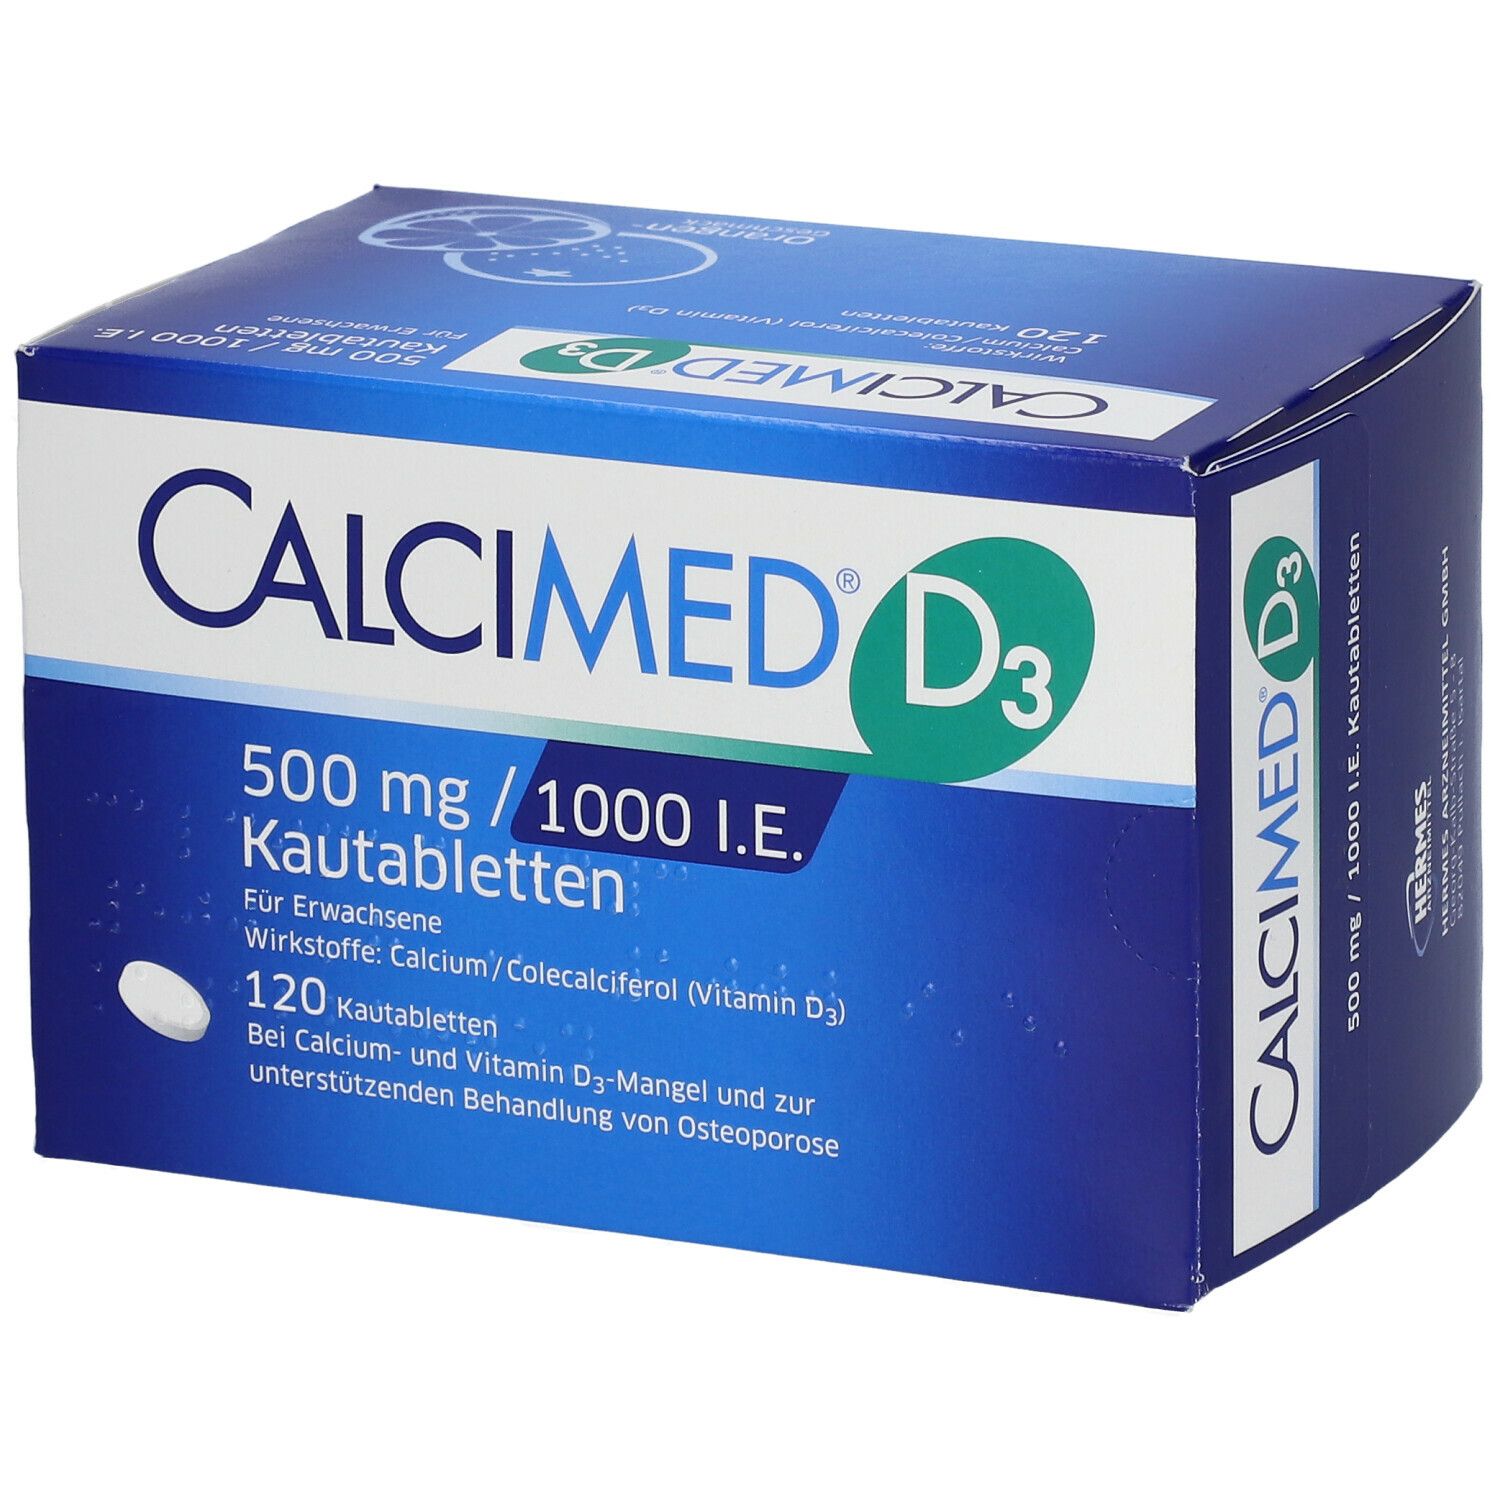 CALCIMED® D3 500mg / 1000 I.E. Kautabletten